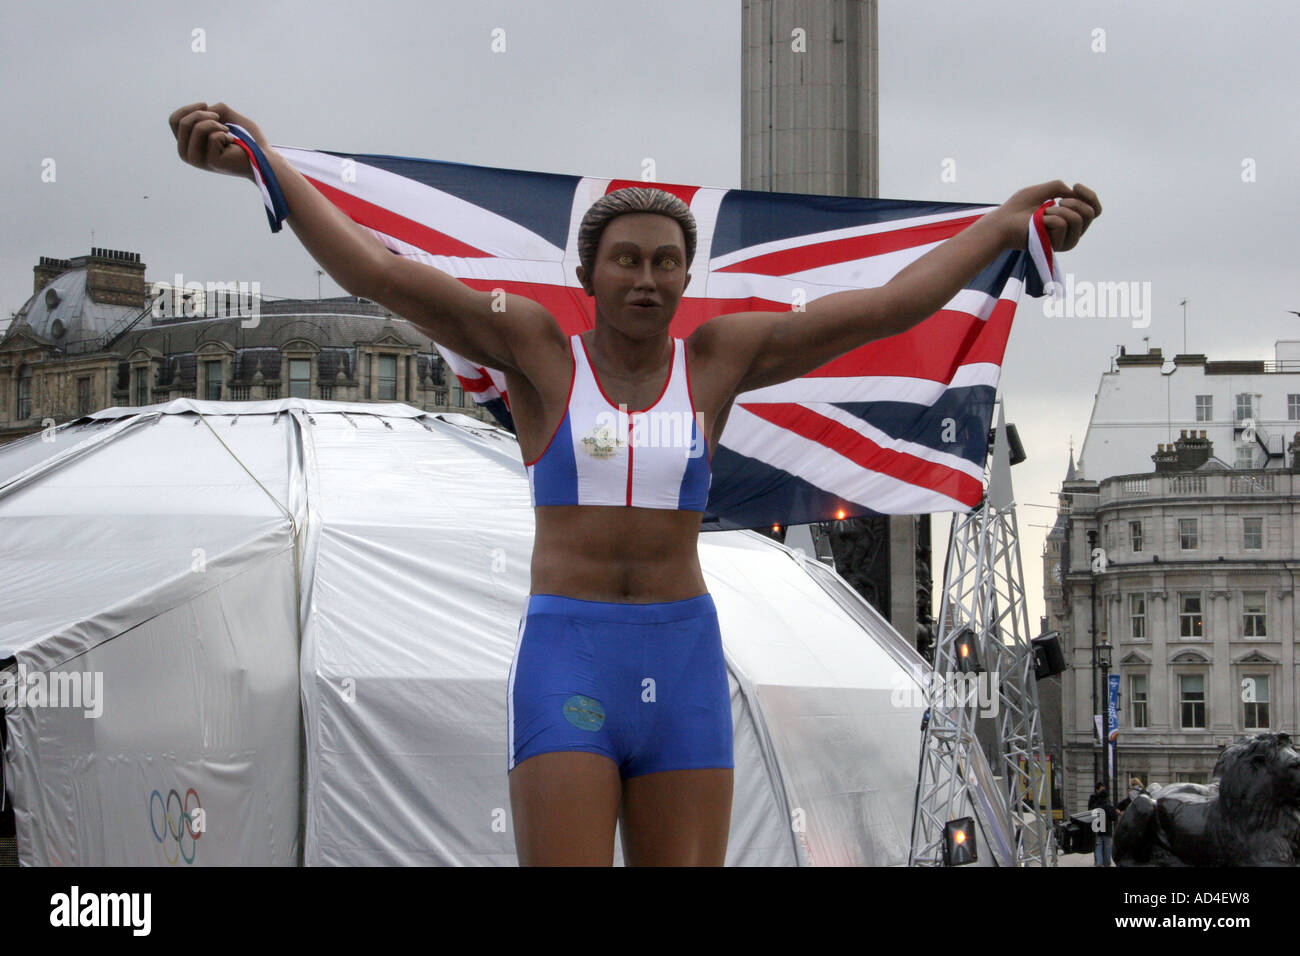 Una gran estatua de un corredor promoviendo la candidatura para los Juegos Olímpicos Londres 2012.Trafalgar Square de Londres, Inglaterra Foto de stock